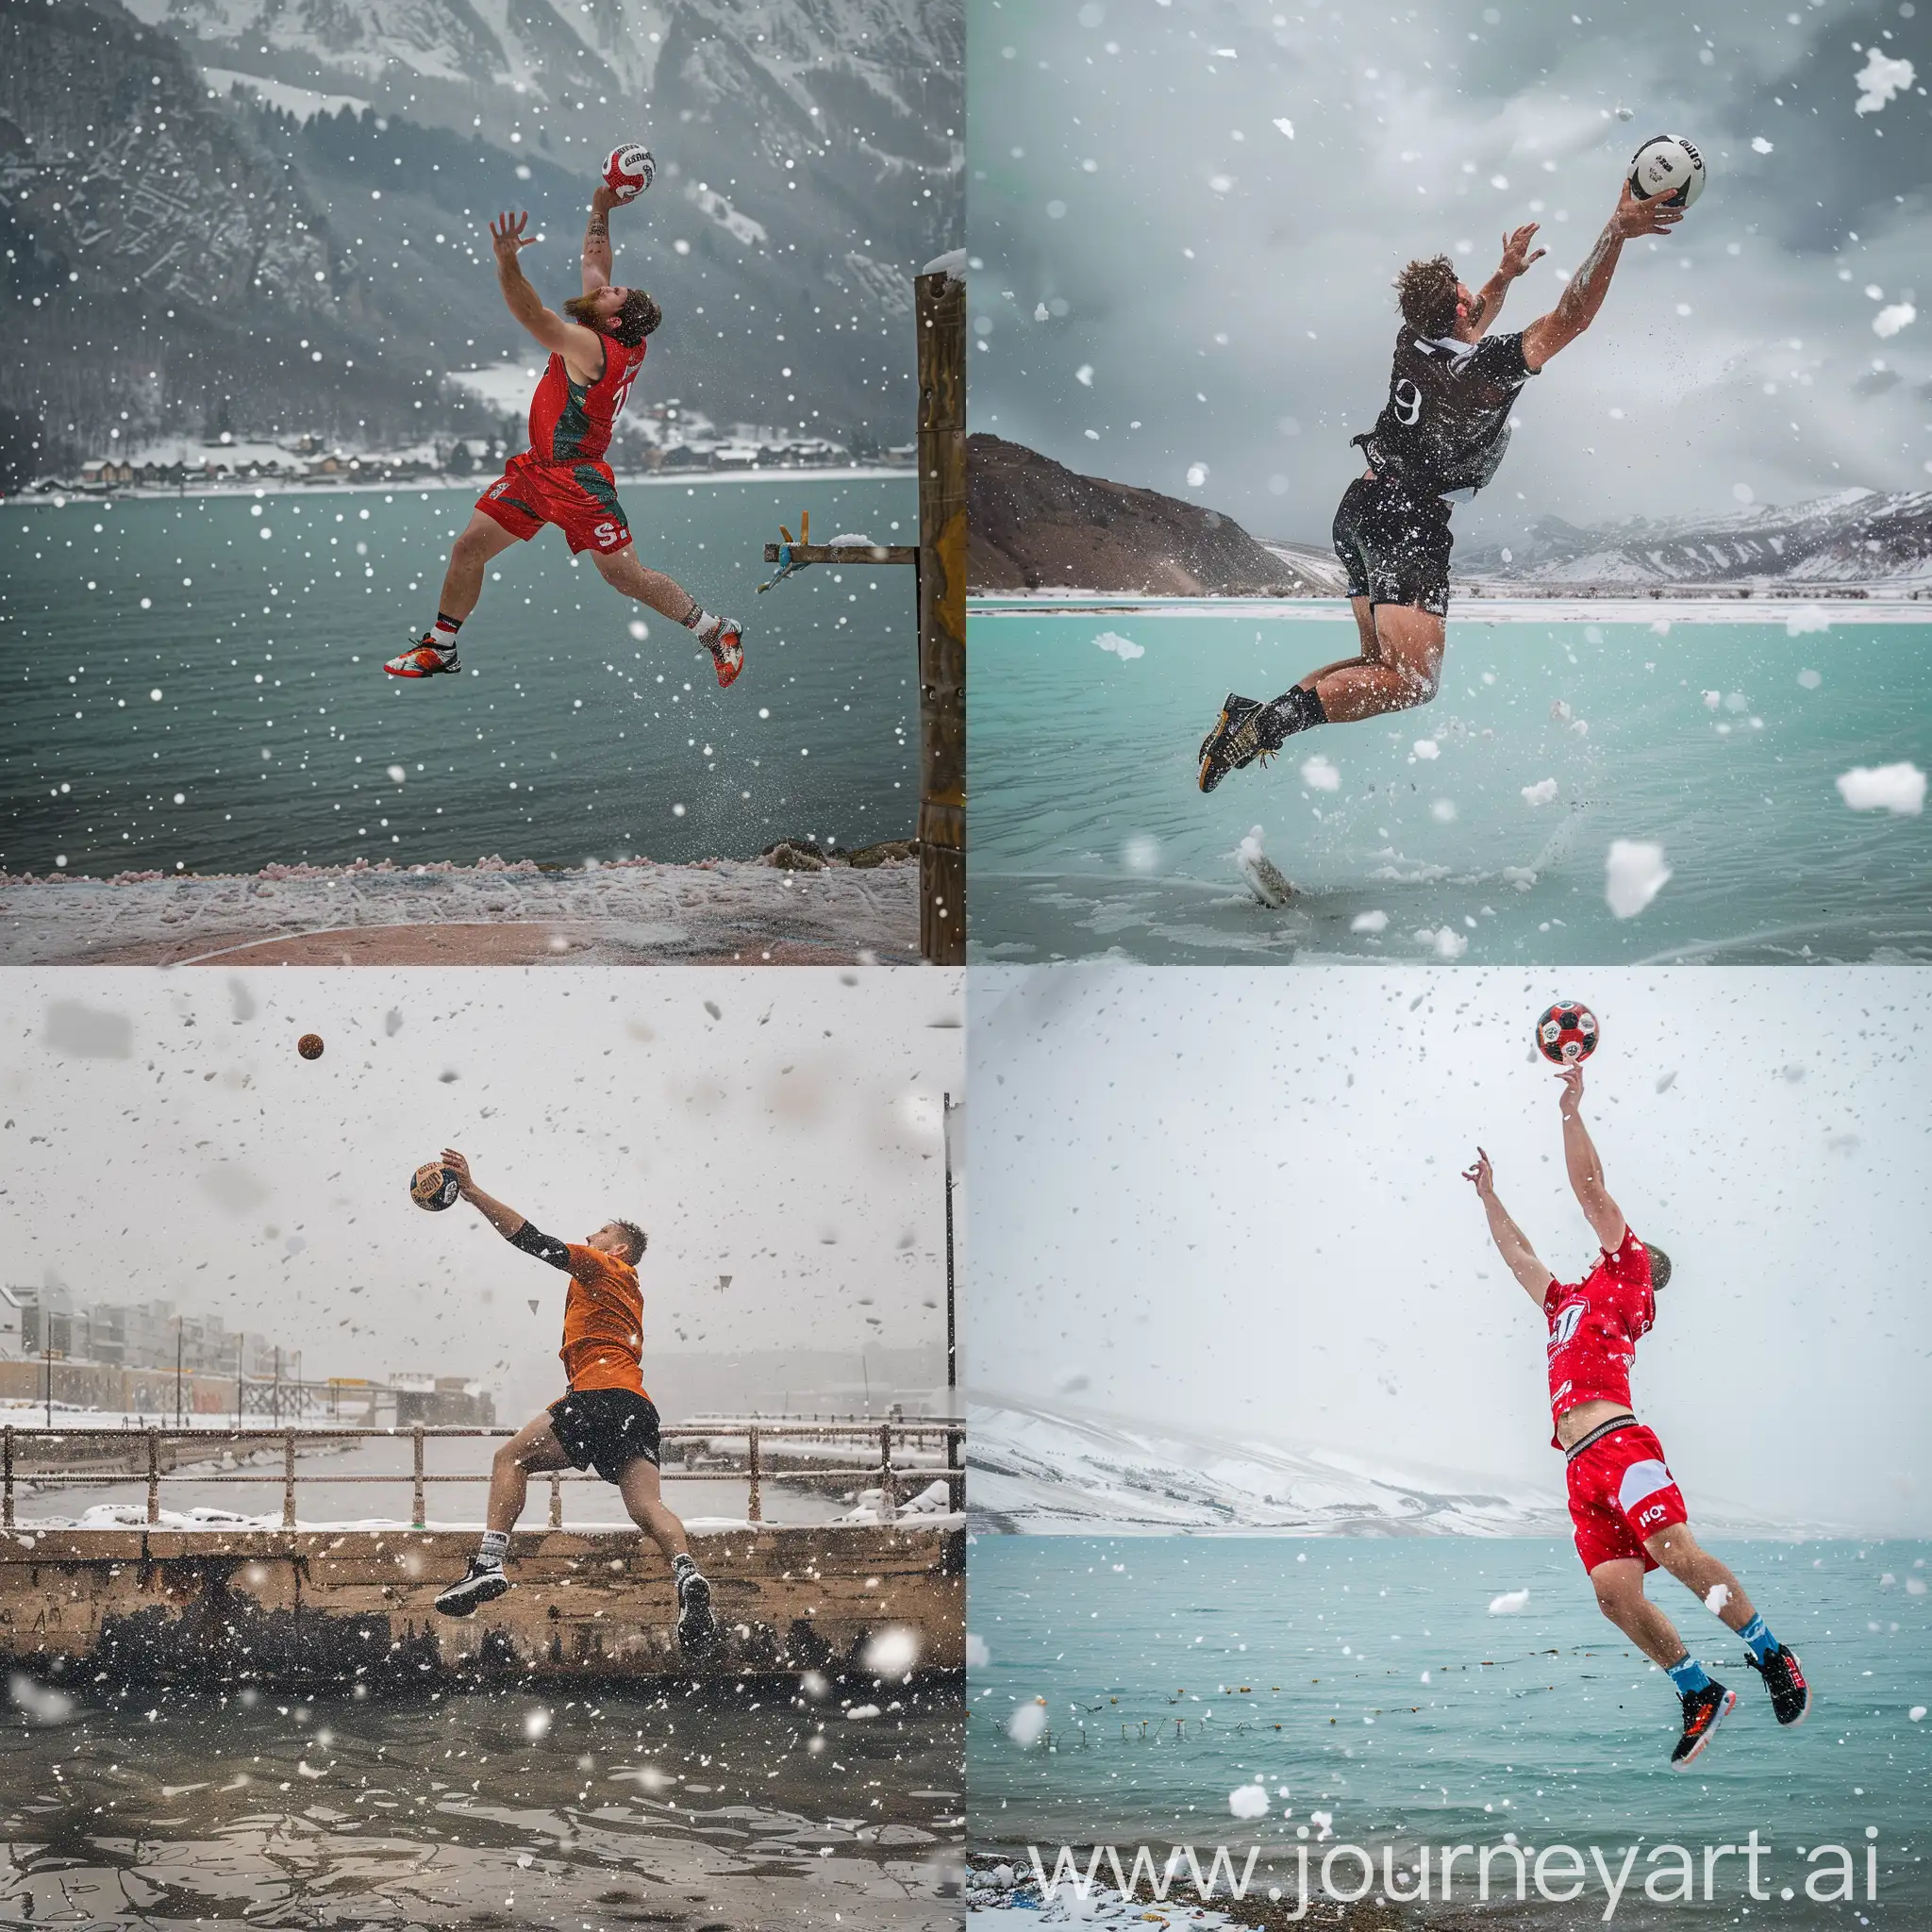 Handball-Player-Making-a-Strong-Shot-Above-a-Snowy-Lake